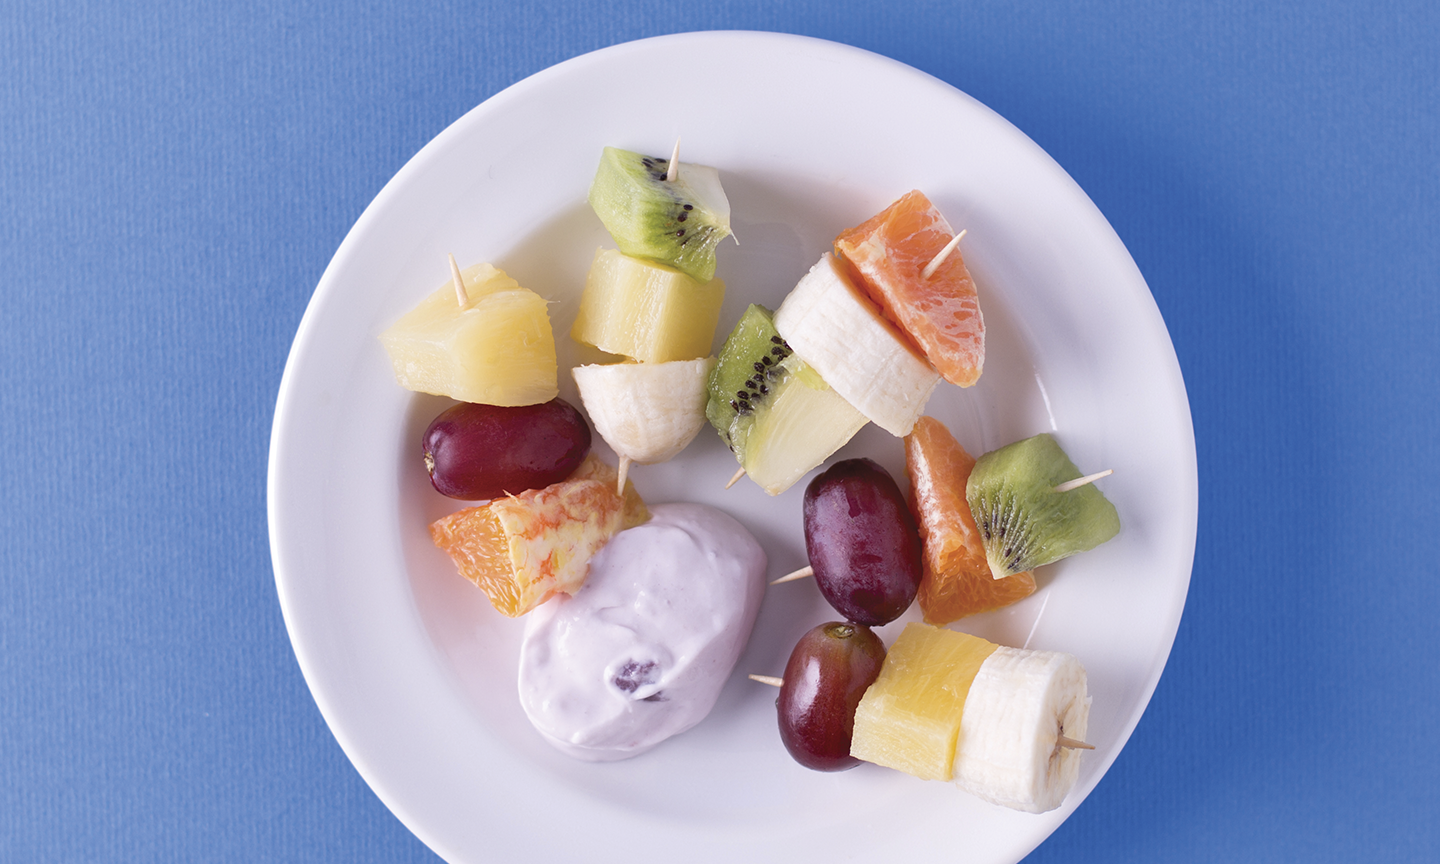 Fruit Kabobs and yogurt dip